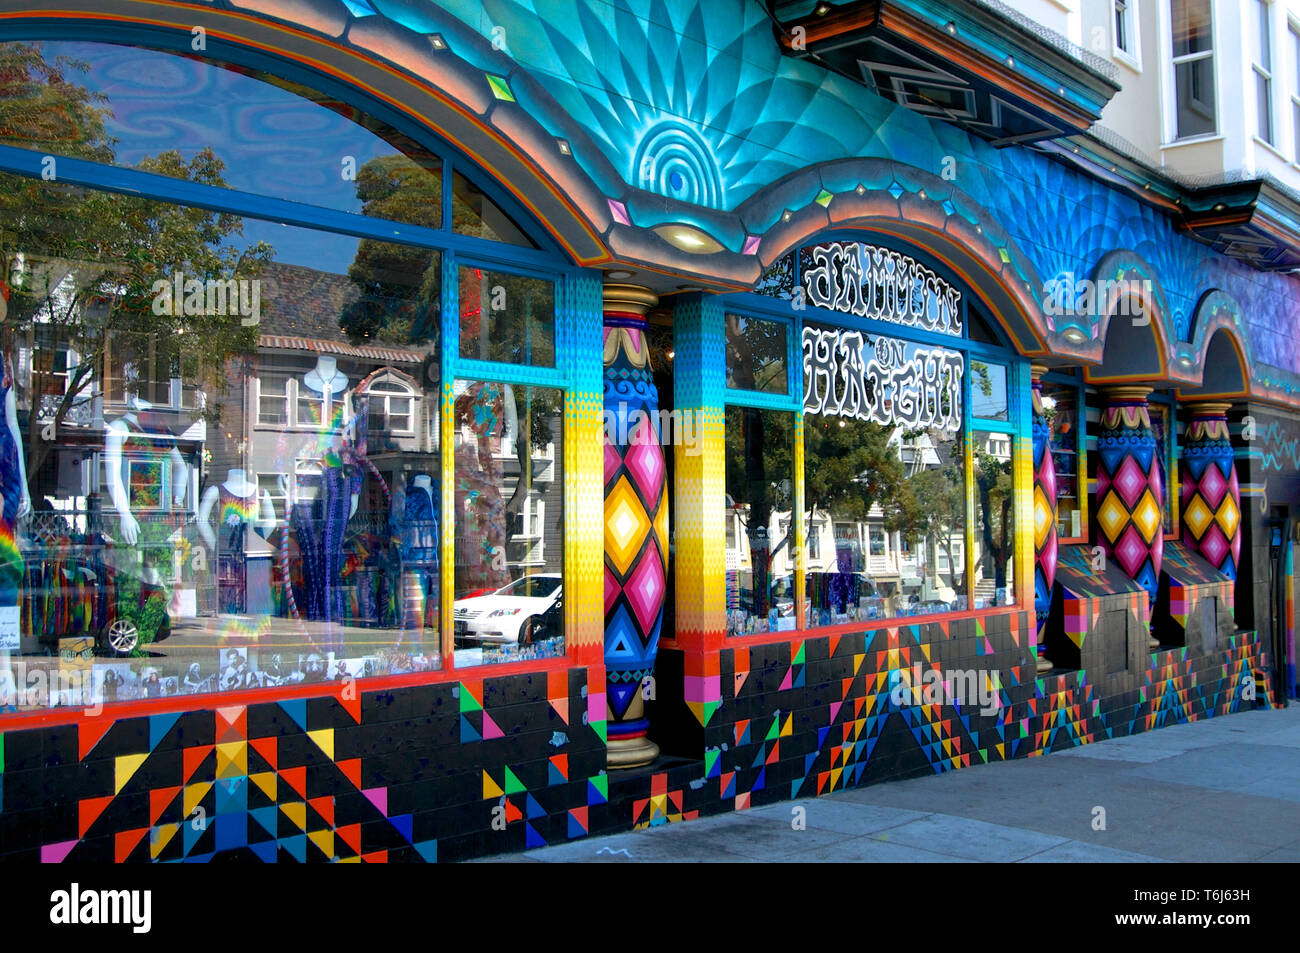 San Francisco, Kalifornien, USA - 24. Mai 2015: Schöne Gebäude von aussen ein Shop in dem berühmten hippie Stadtteil Haight Ashbury in San Franc & Stockfoto